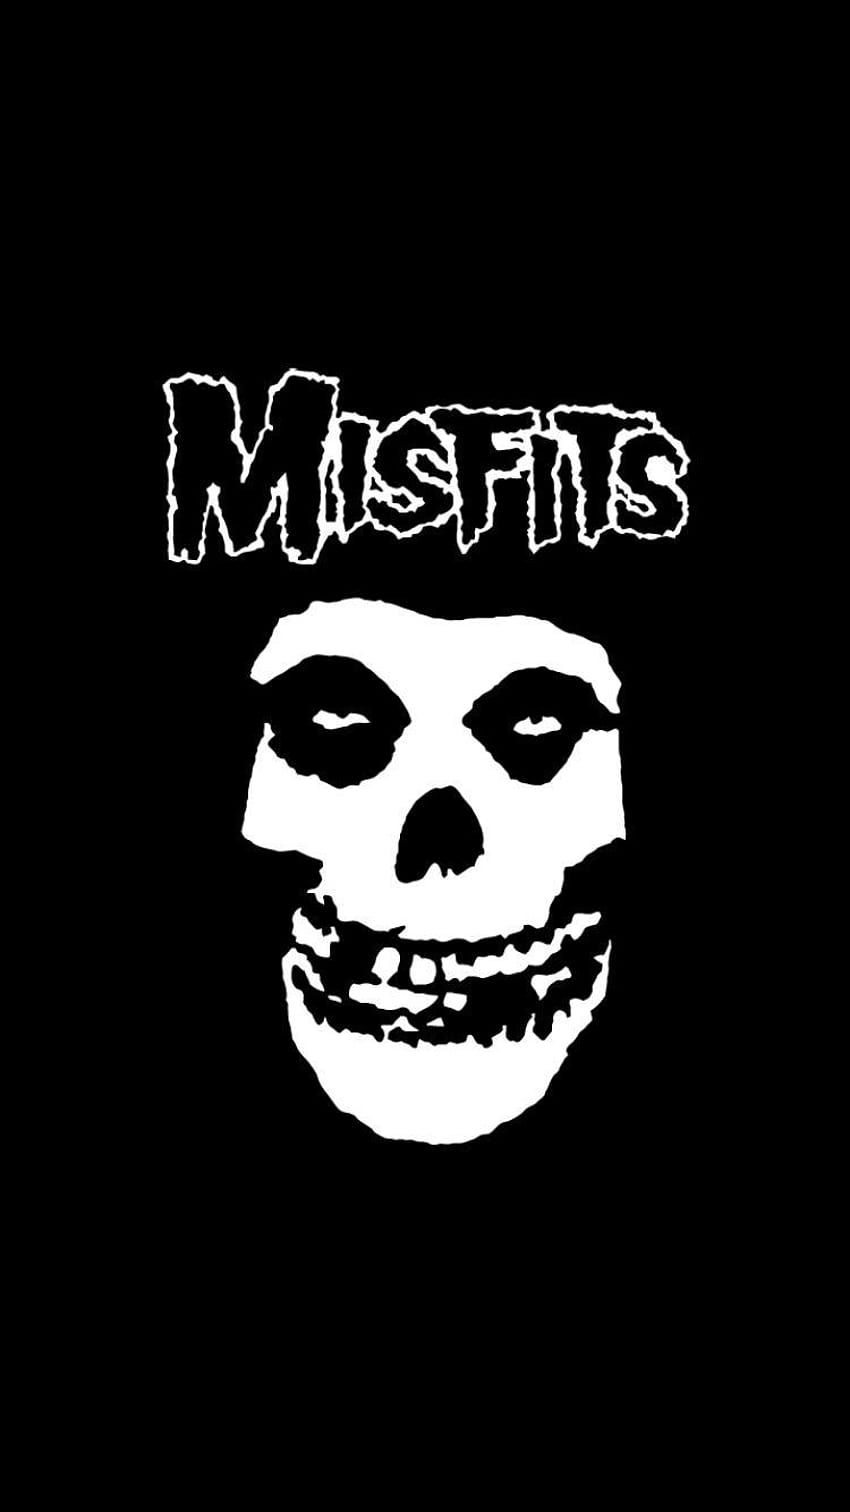 Music/Misfits, metal music mobile HD phone wallpaper